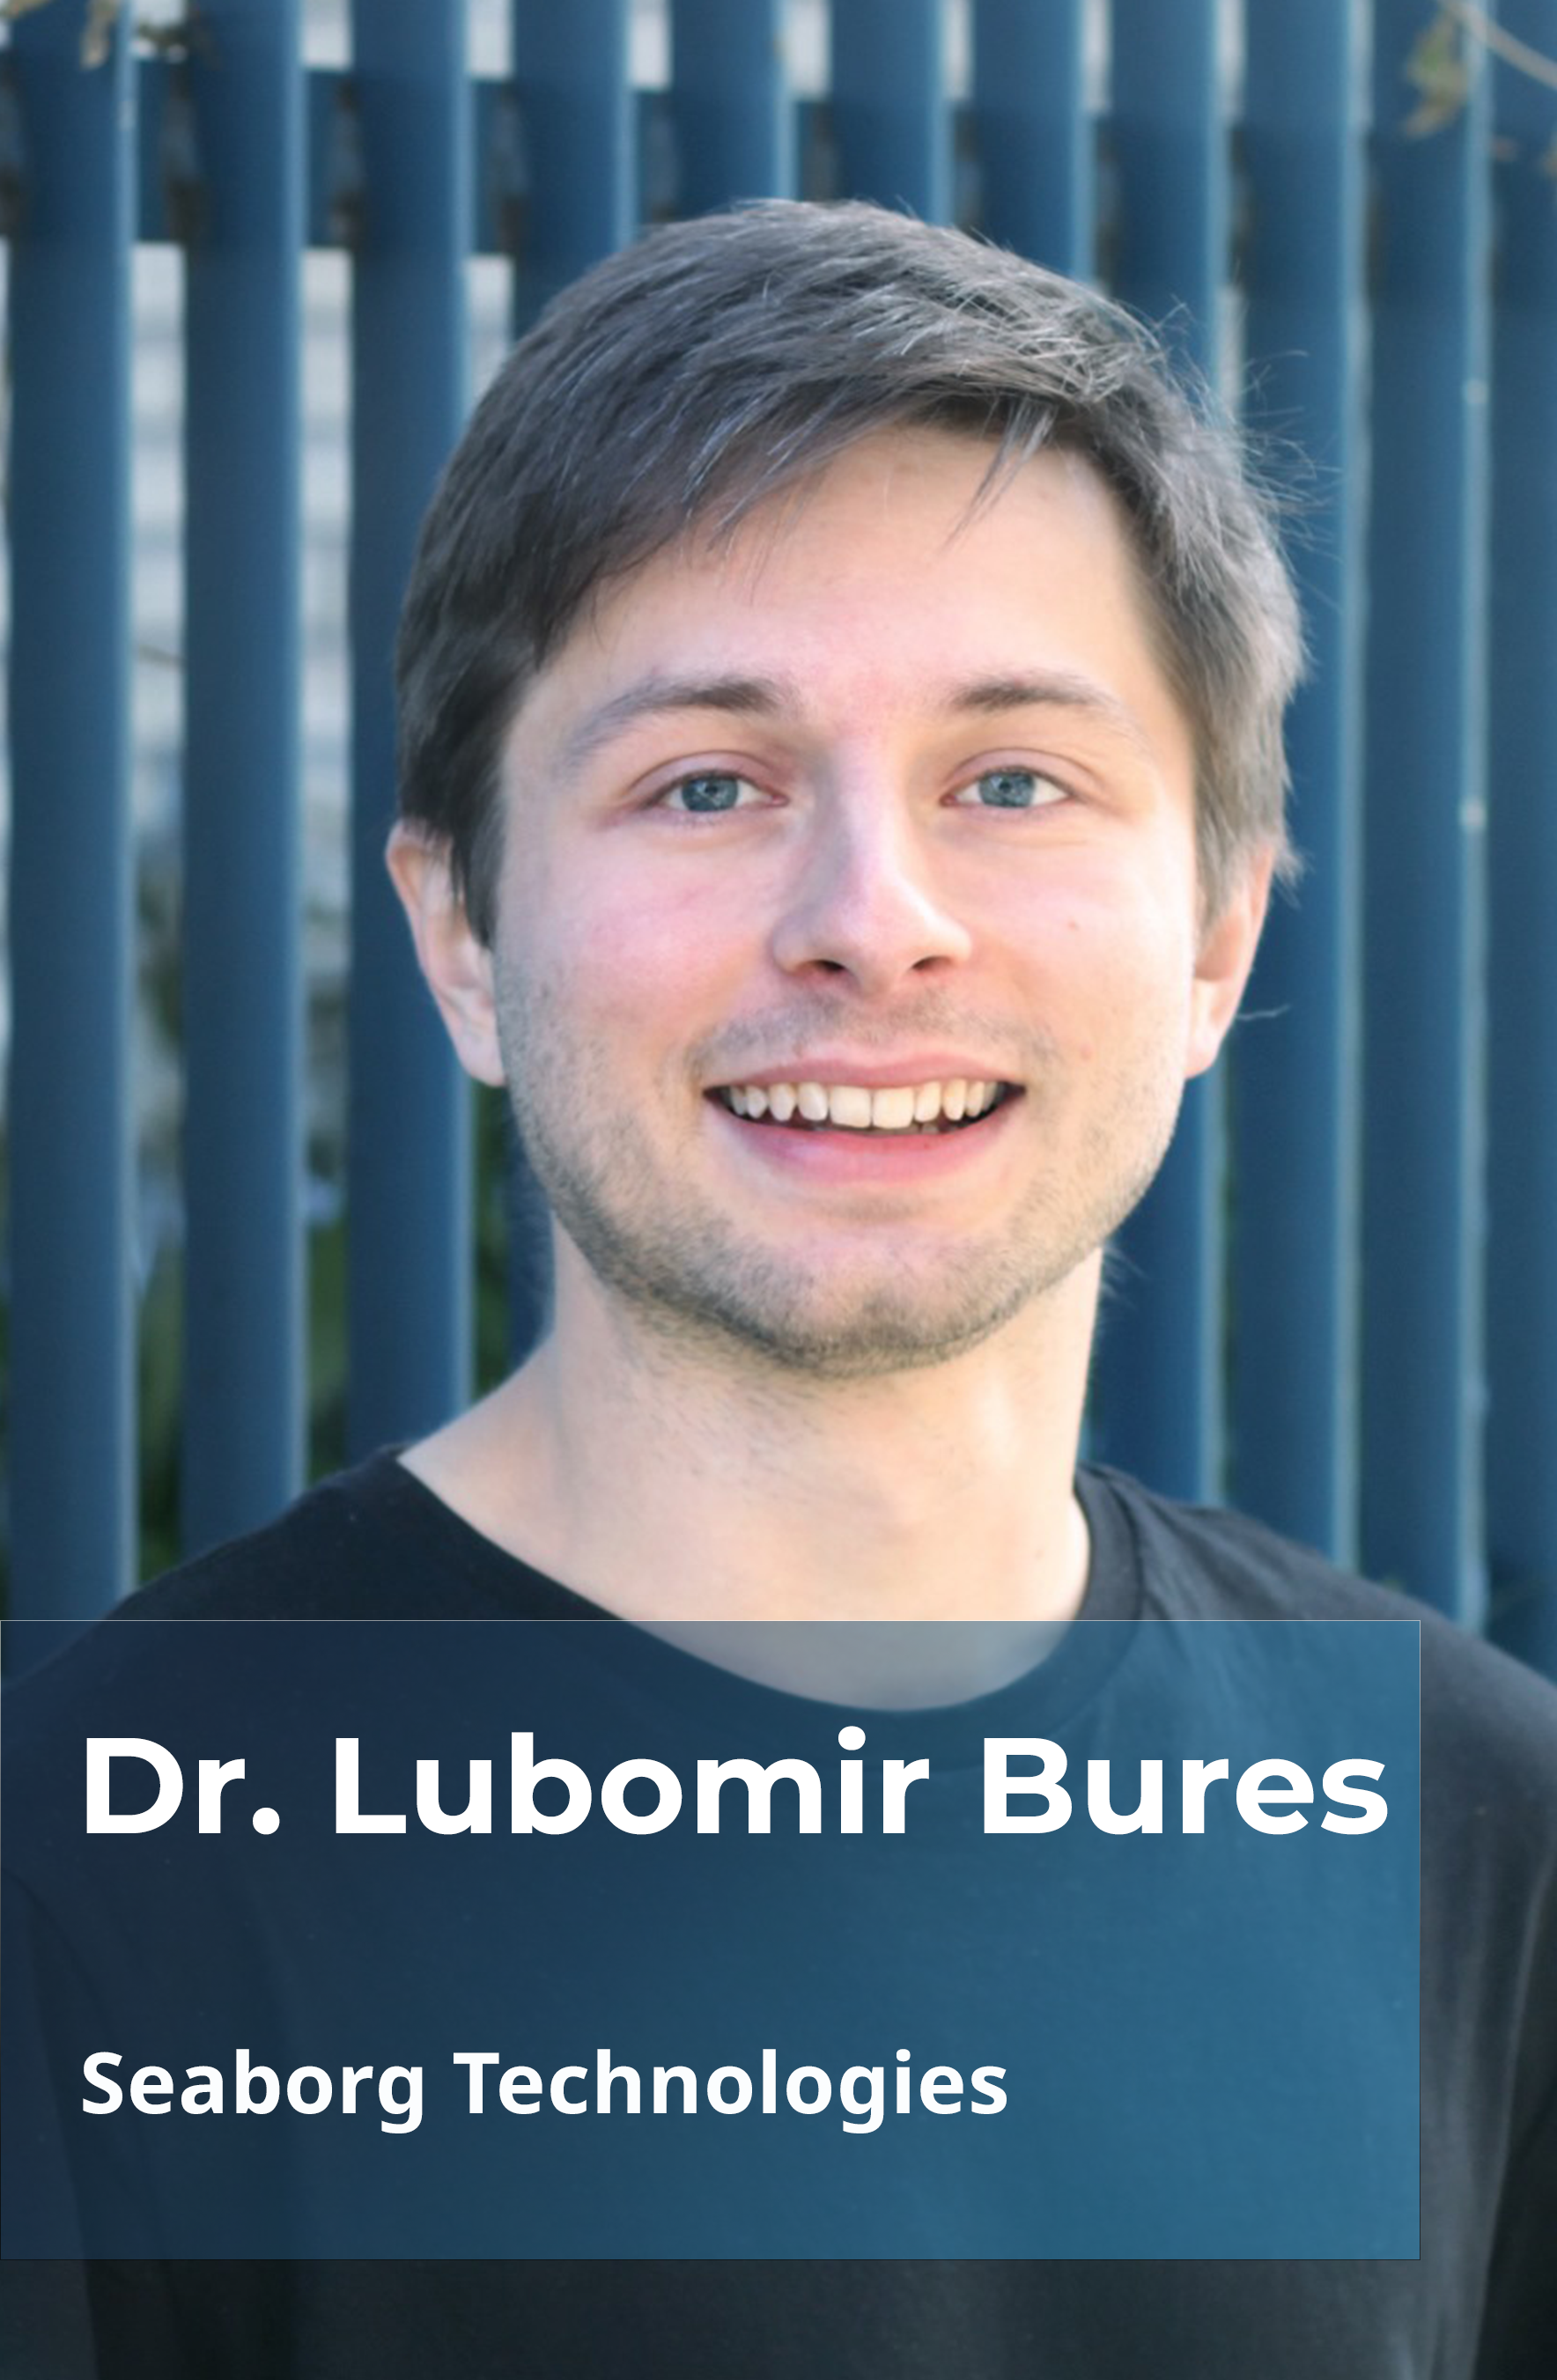 Dr. Lubomir Bures